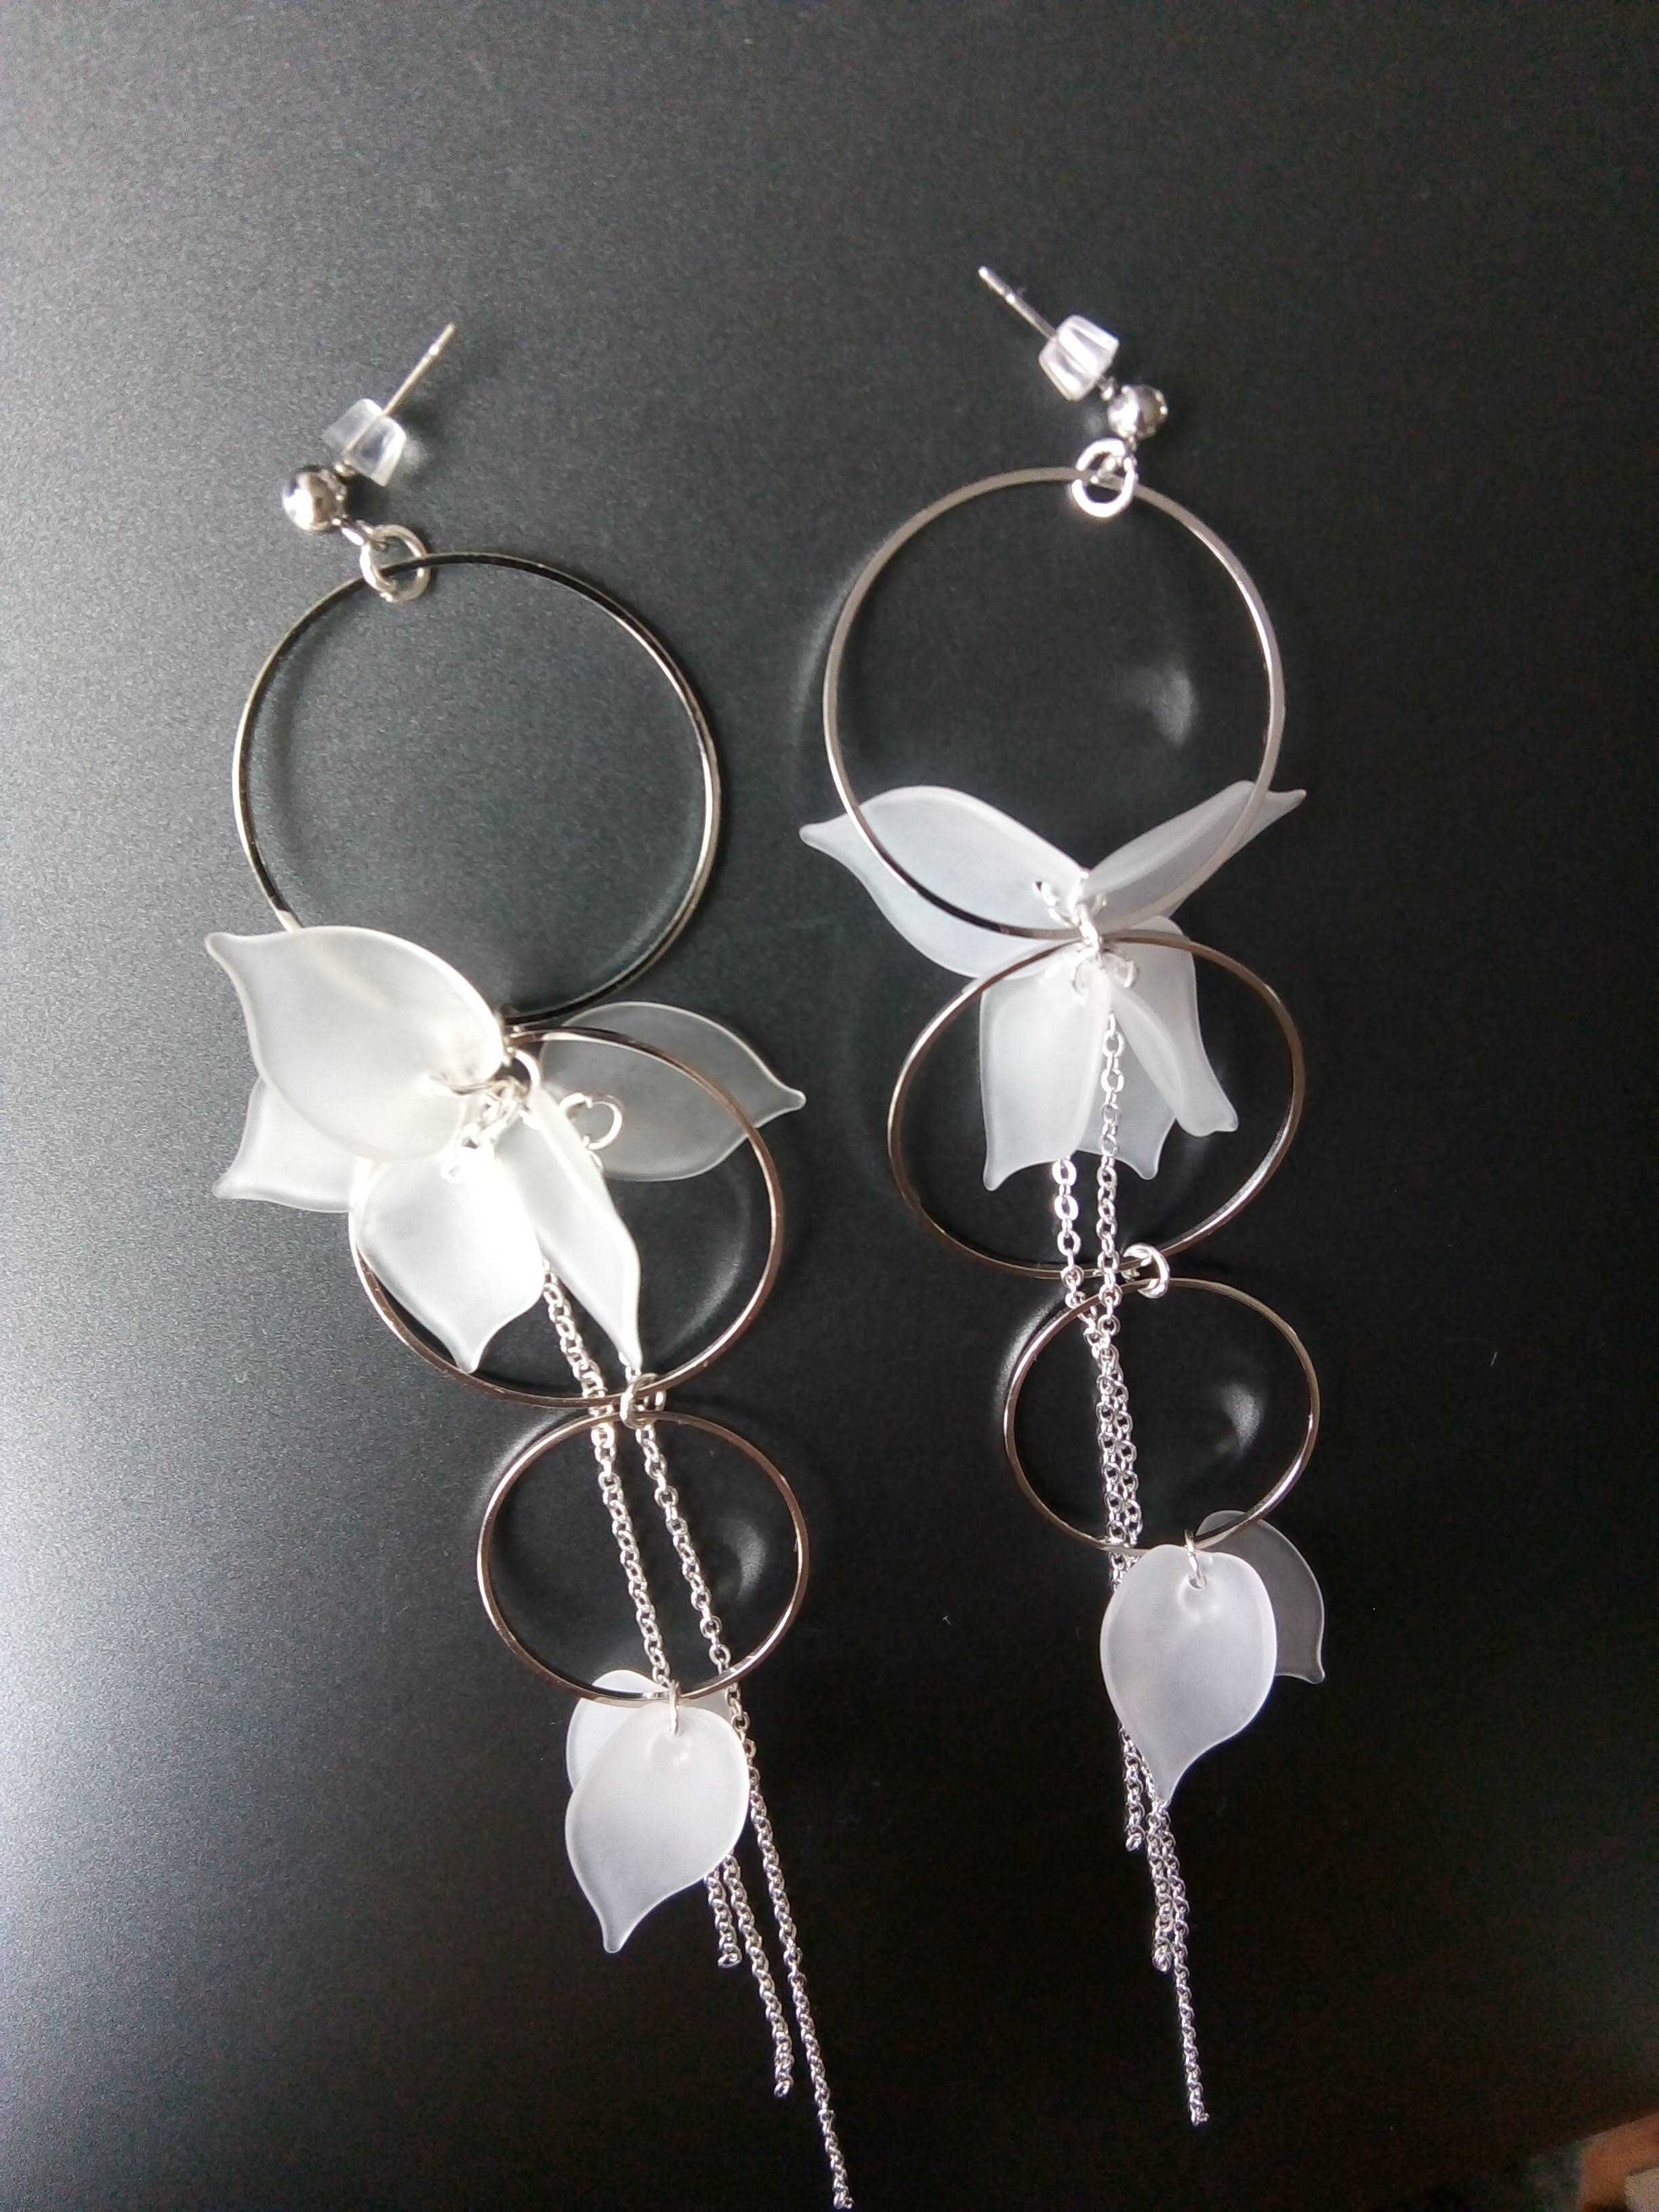 Kolczyki ślubne wizytowe Handmade z kwiatem srebrne